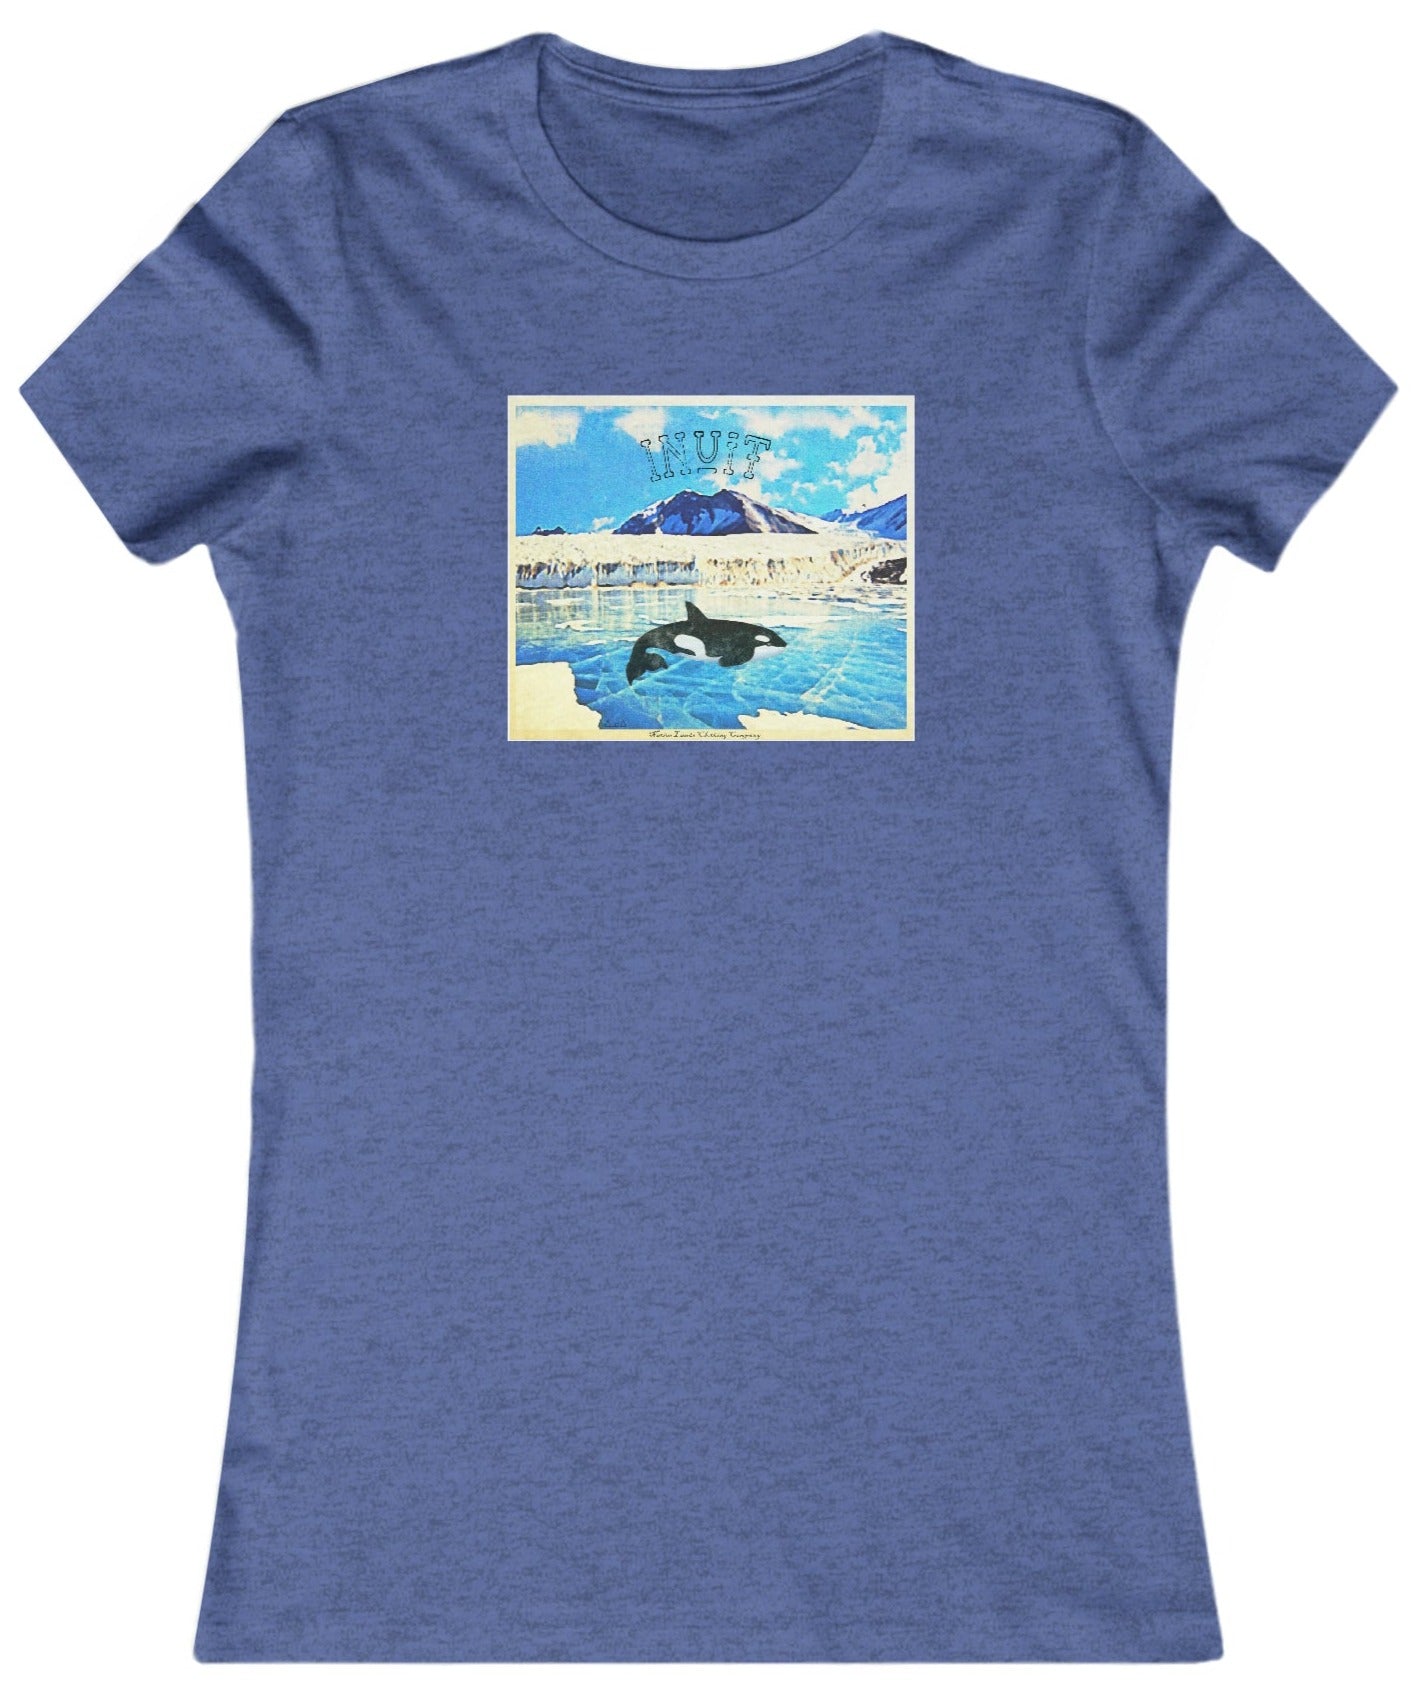 Camisa favorita de la tribu Inuit para mujer Orca Algodón Nativo Americano